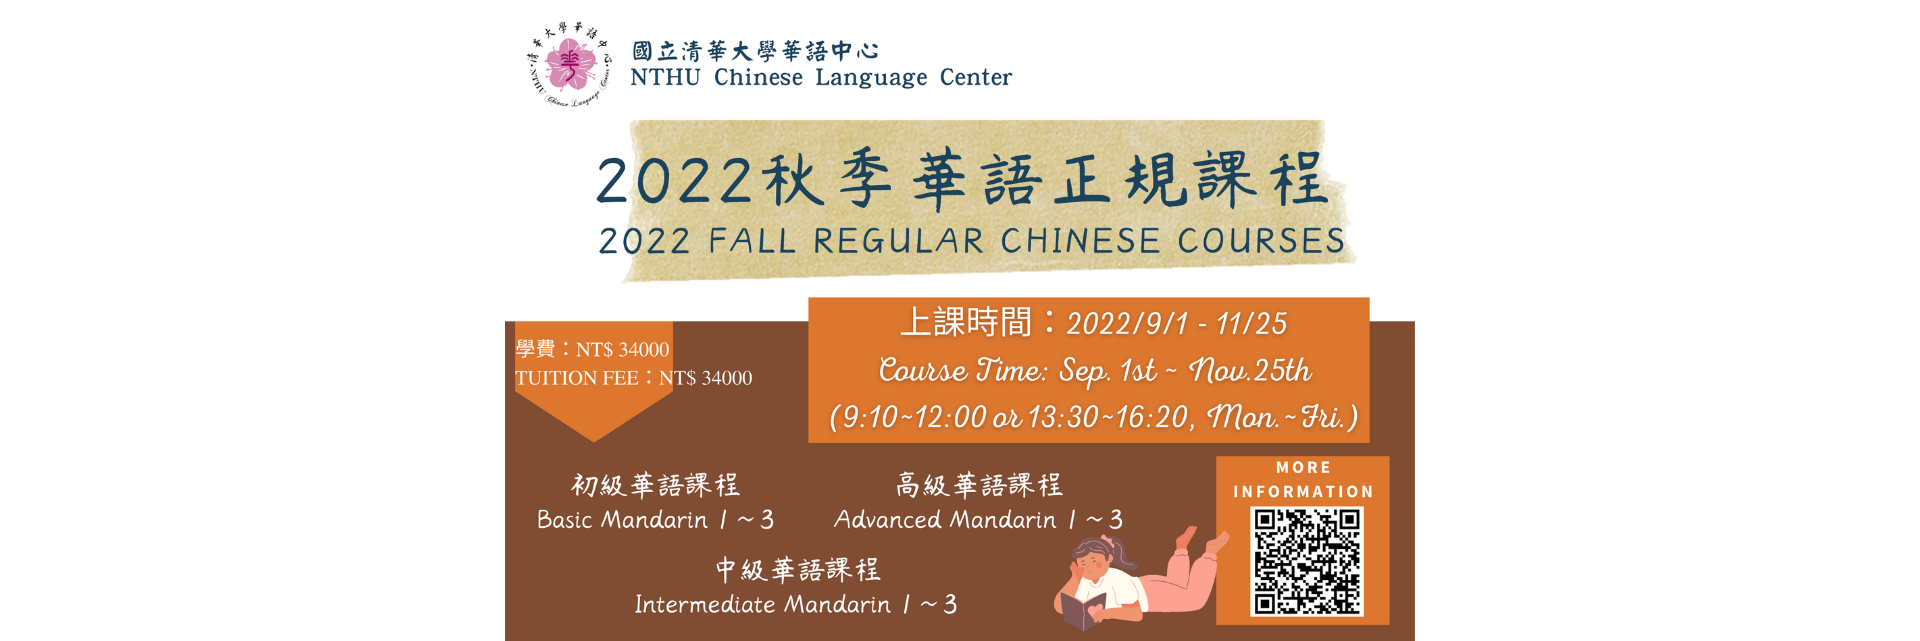 2022年華語中心秋季正規班重要公告